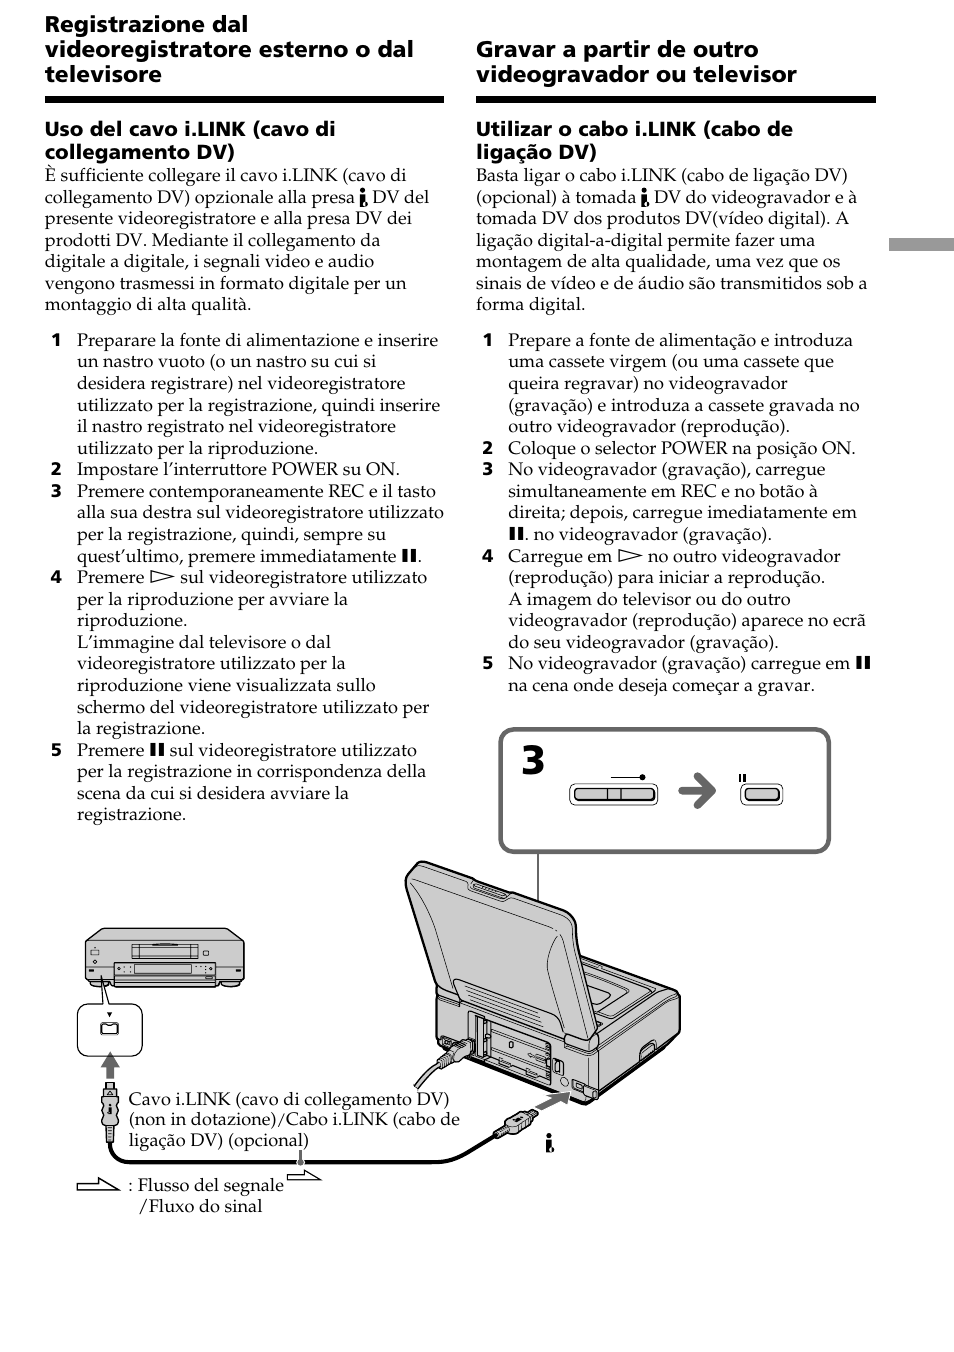 Sony GV-D1000 Manuale d'uso | Pagina 33 / 220